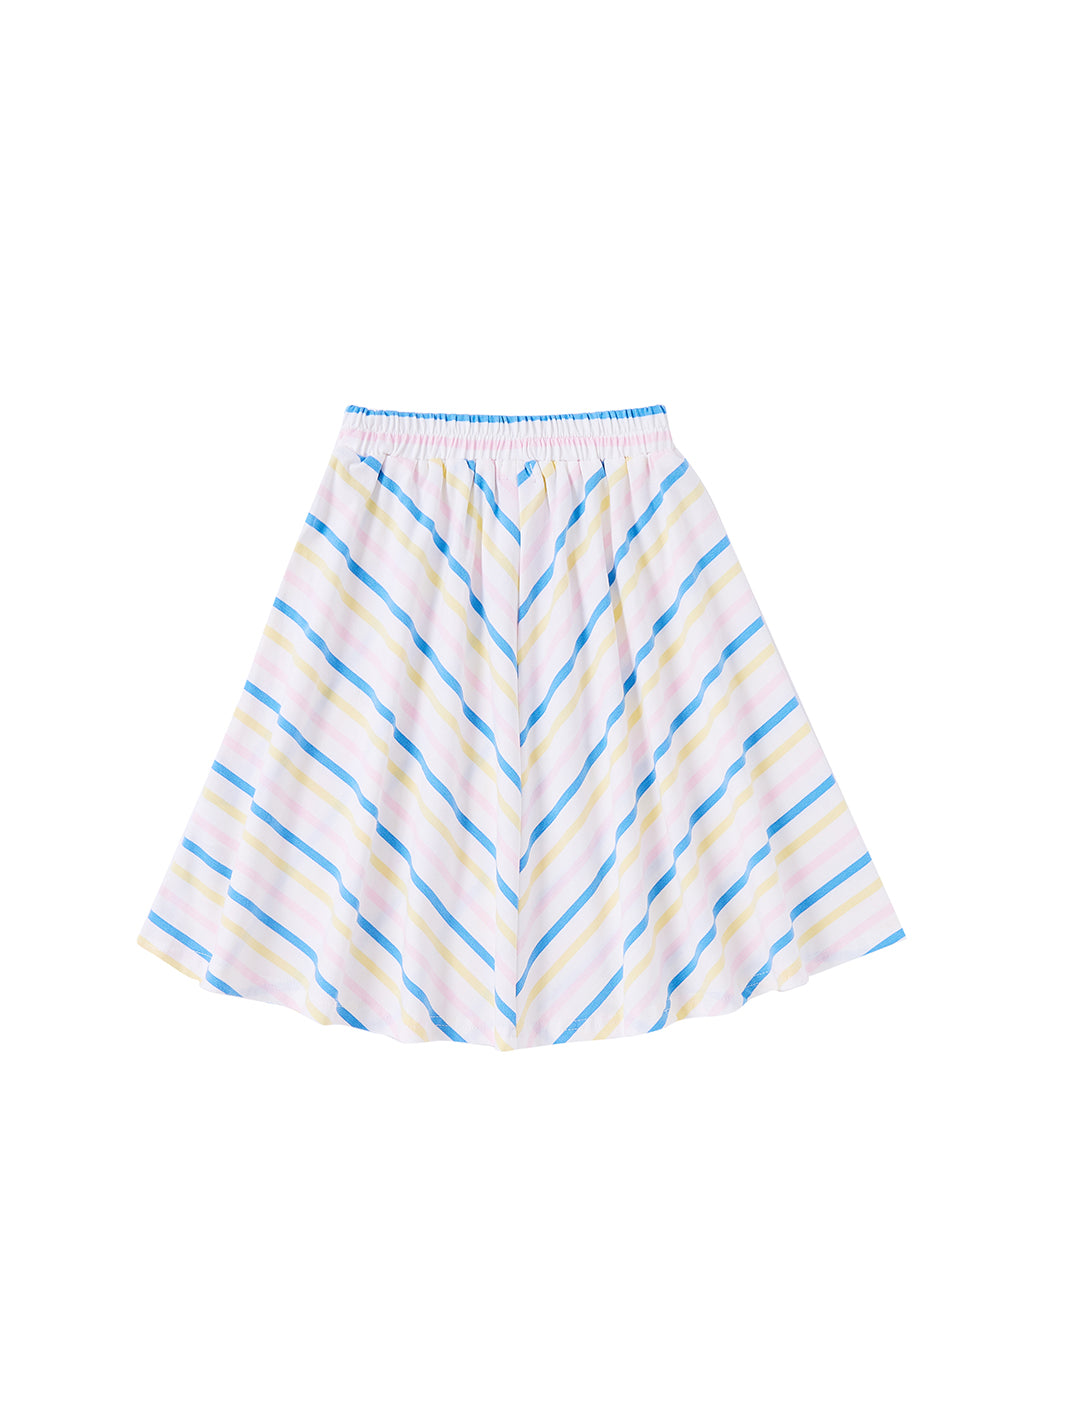 Multi Striped Basic Skirt